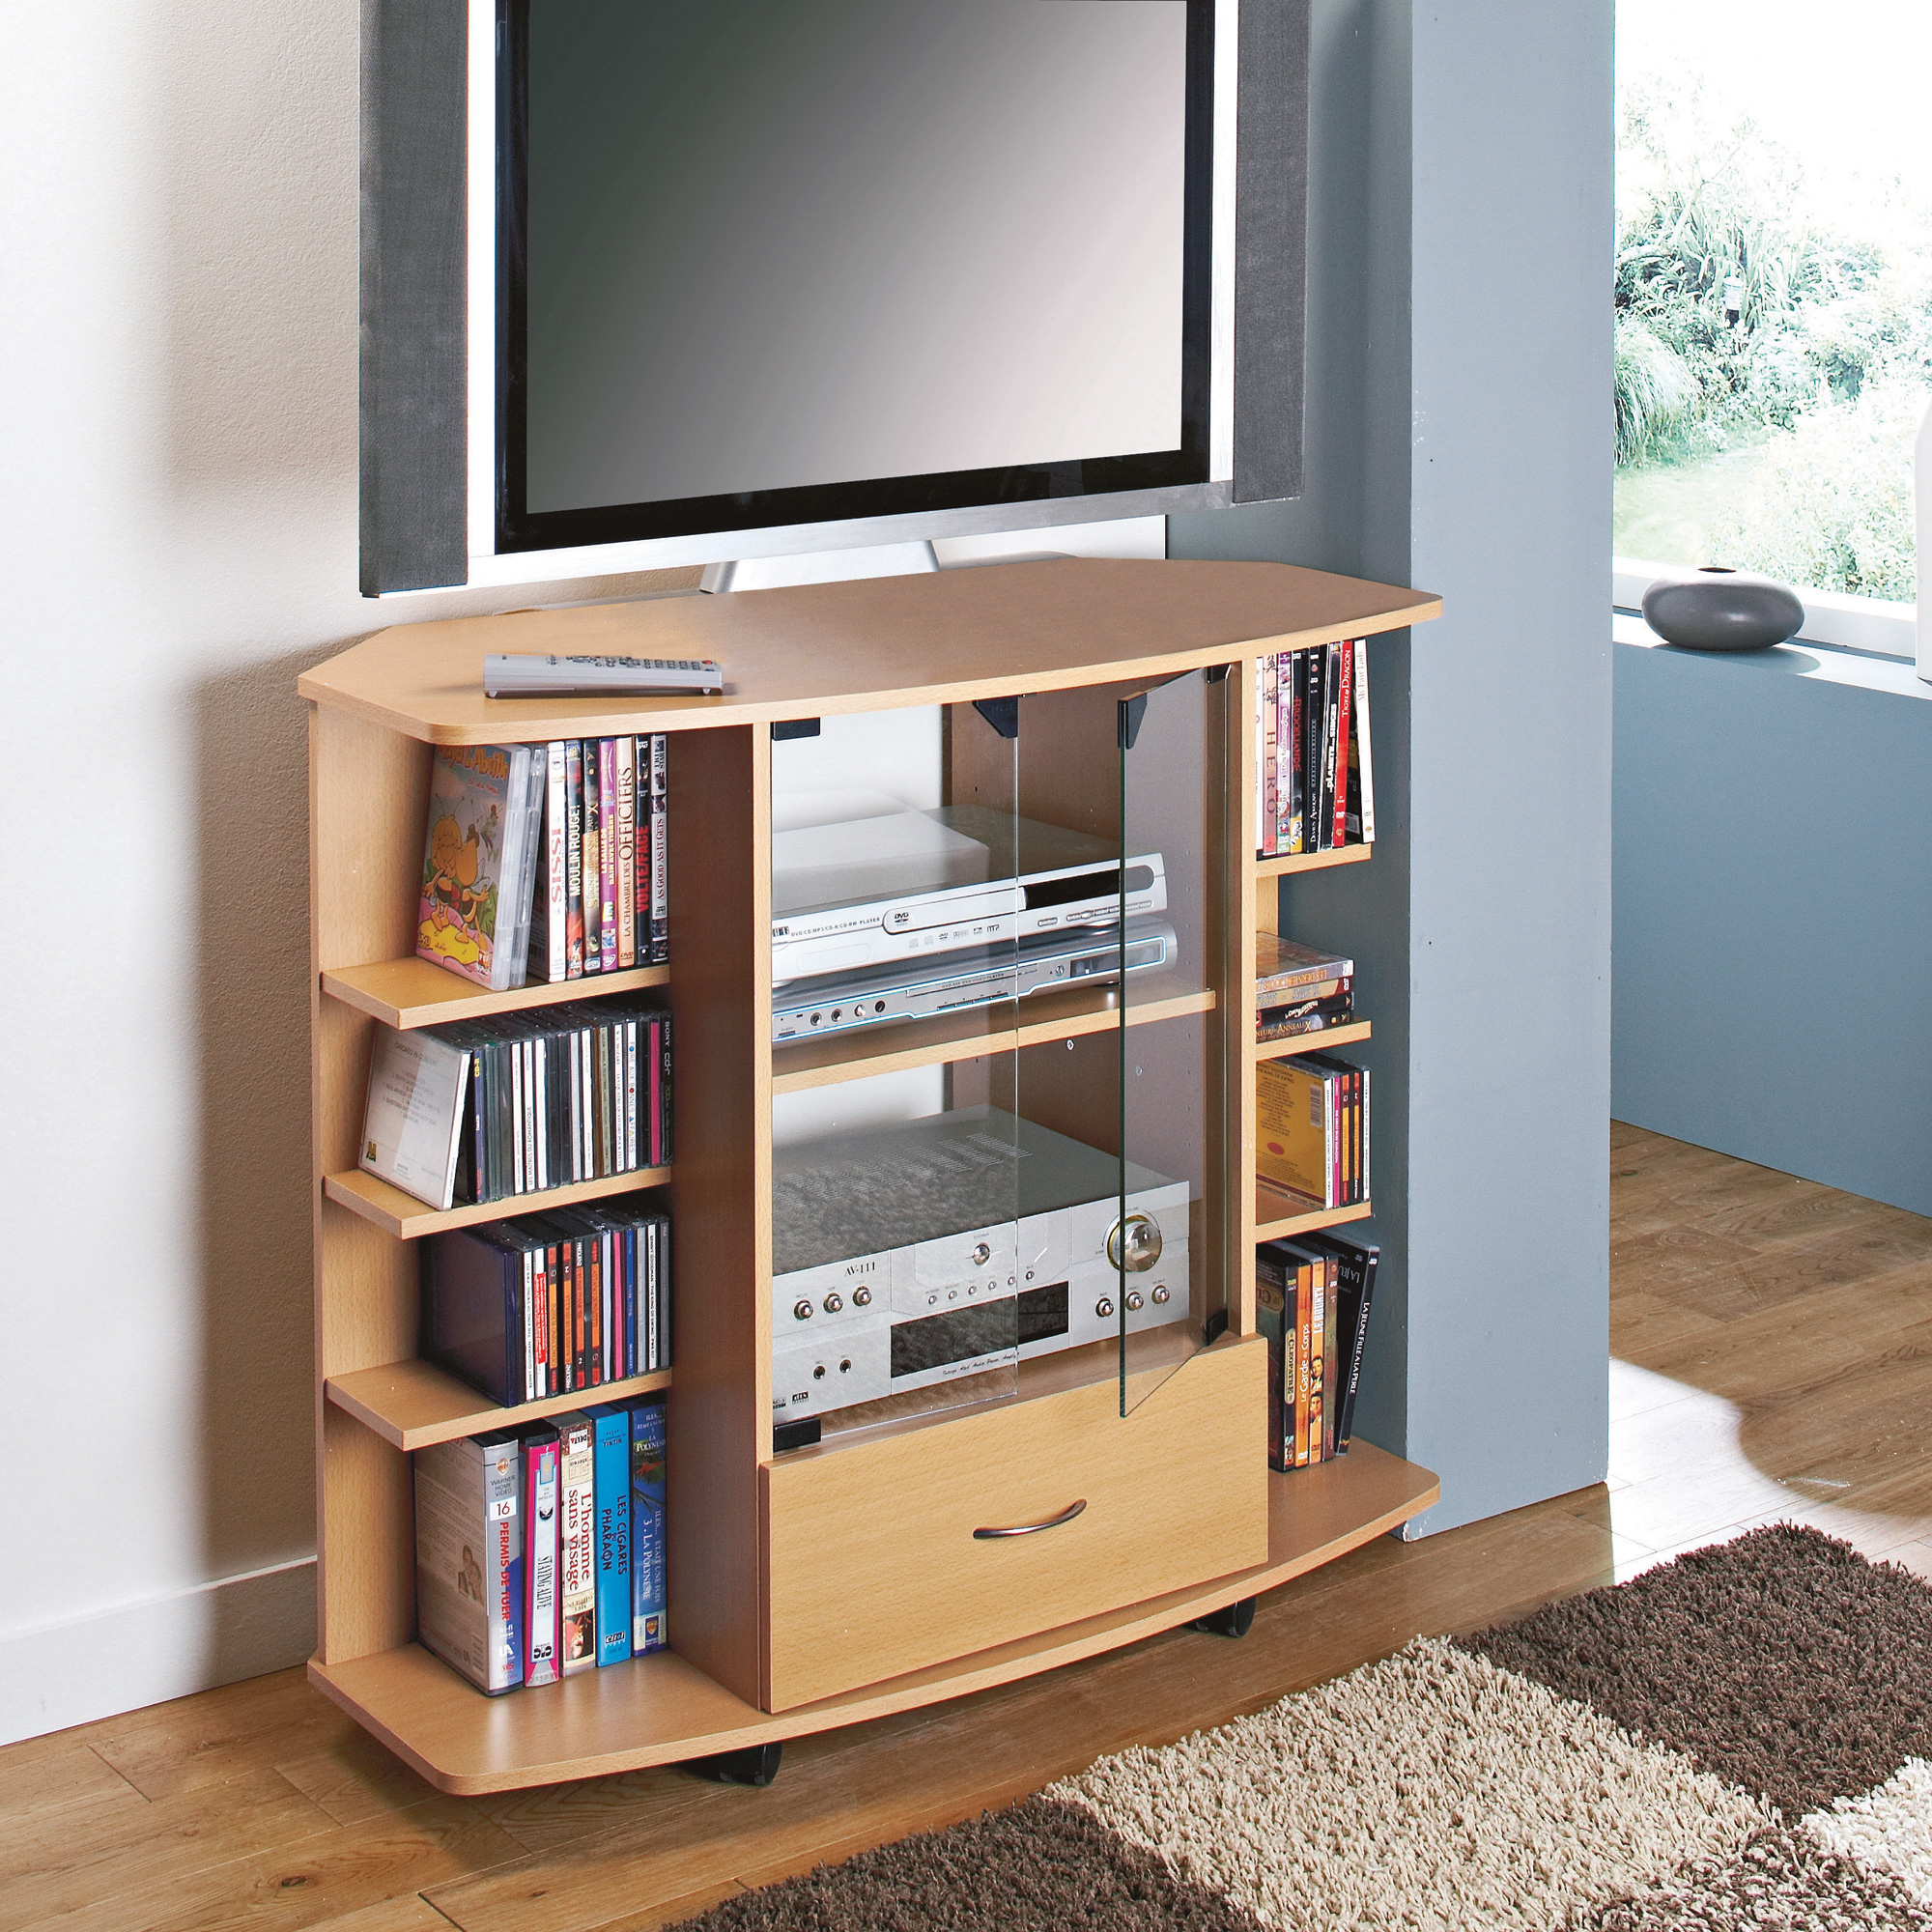 Meuble Tv D'Angle Corner - Hêtre - Frais De Traitement De ... destiné Meuble Hifi Ikea